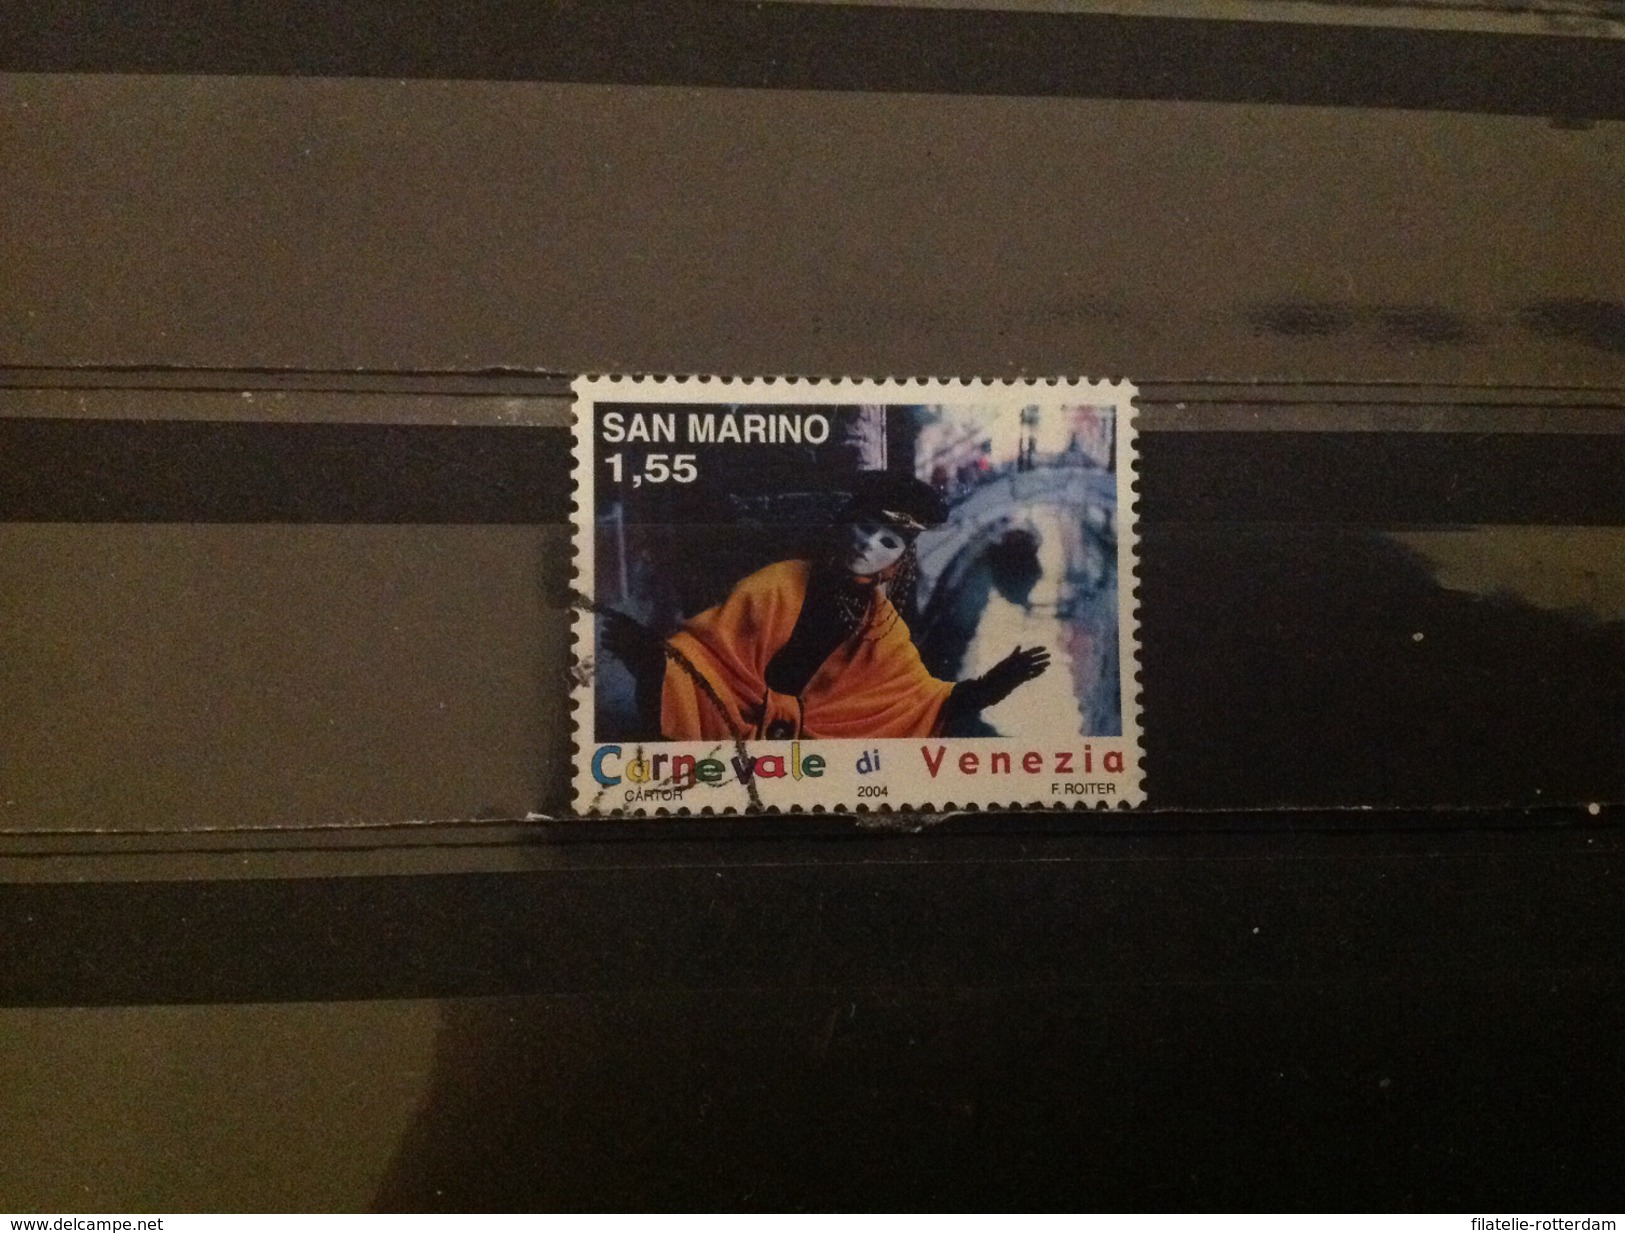 San Marino - Carnavak (1.55) 2004 - Gebraucht